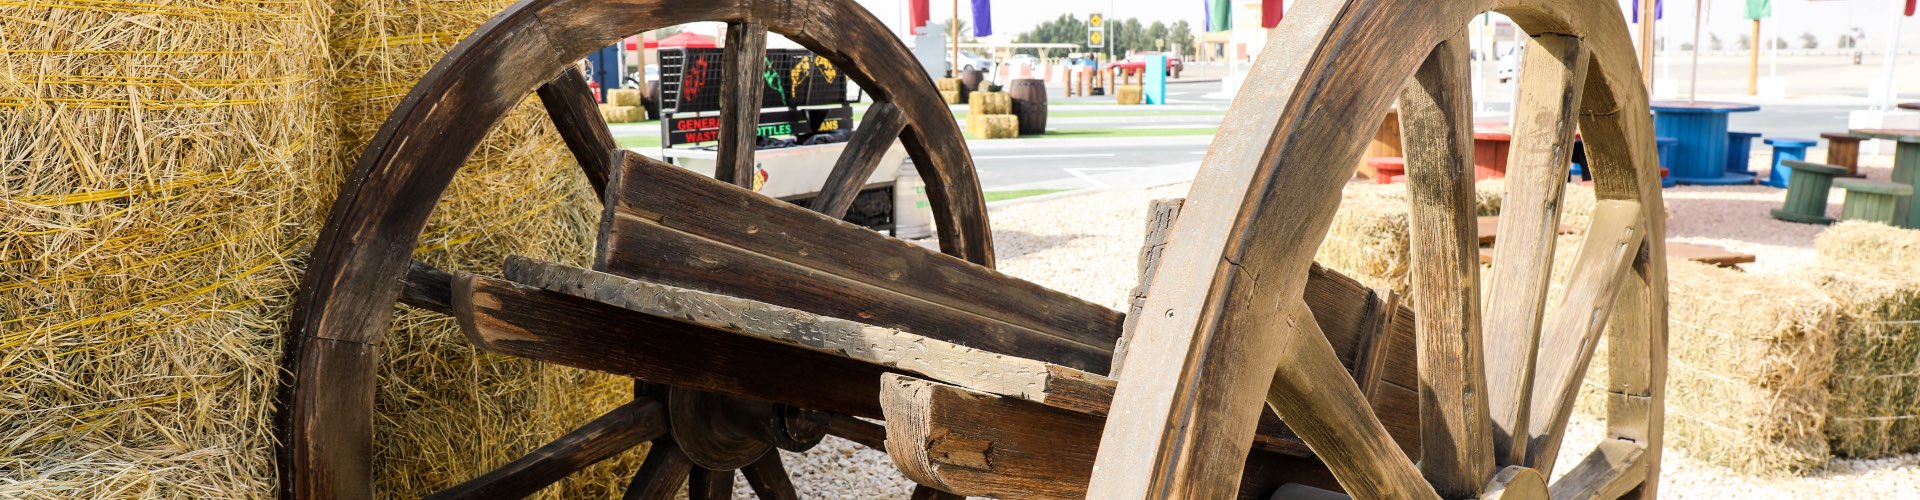 عربة خشبية قديمة تستخدم كديكور 